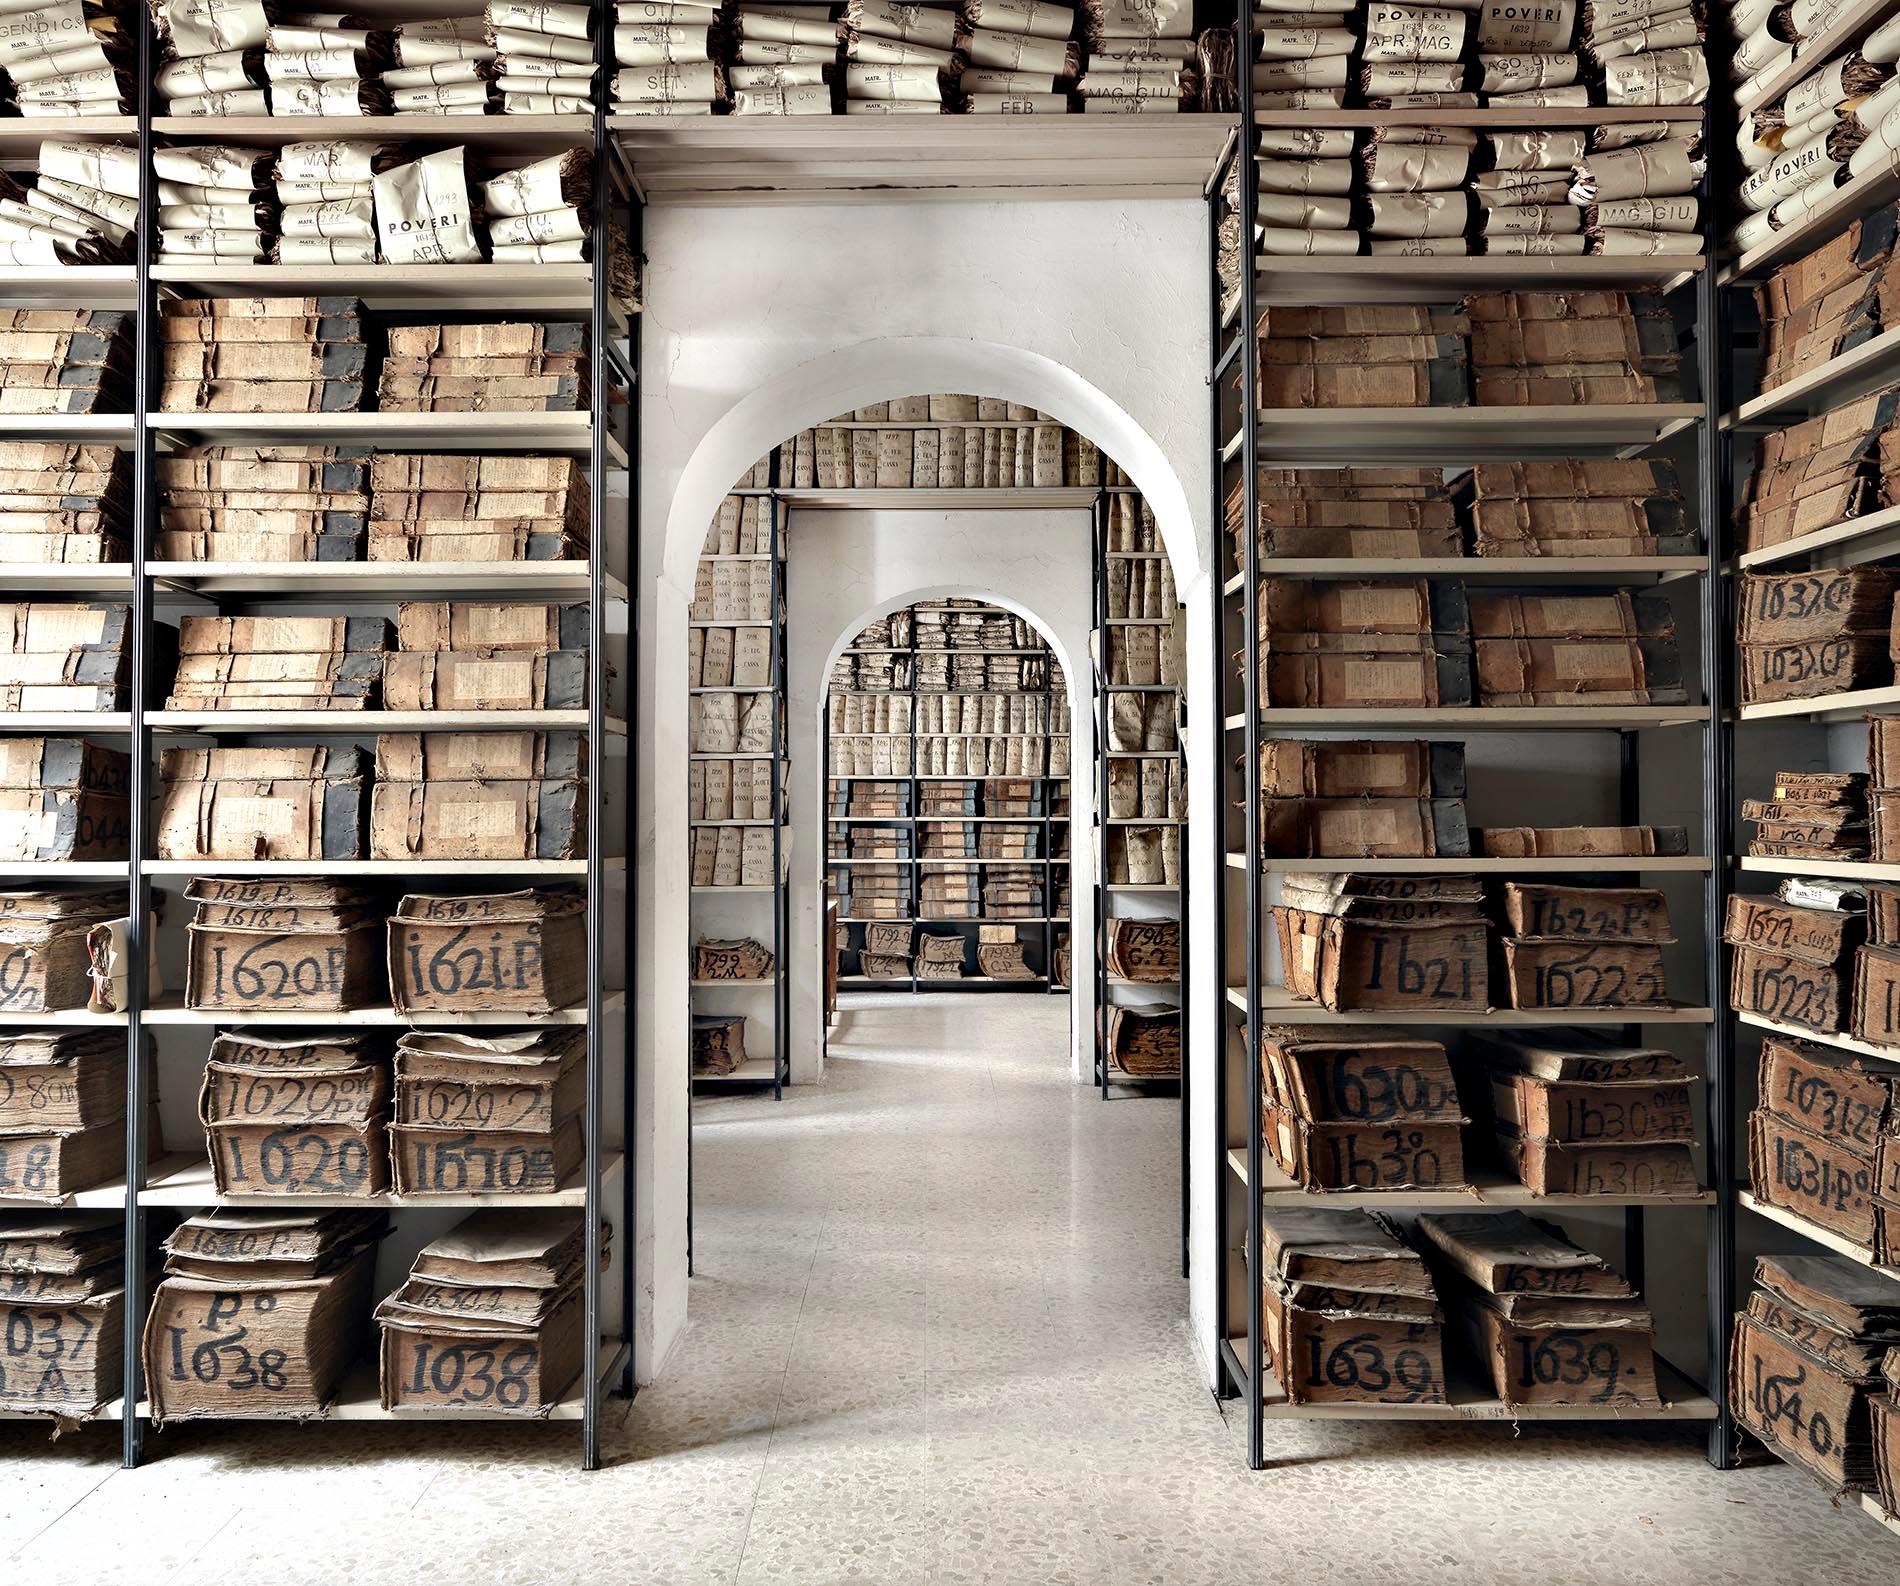 Archivio Banco di Napoli I, Napoli 2013 – die Innenseite einer Bibliothek mit Büchern